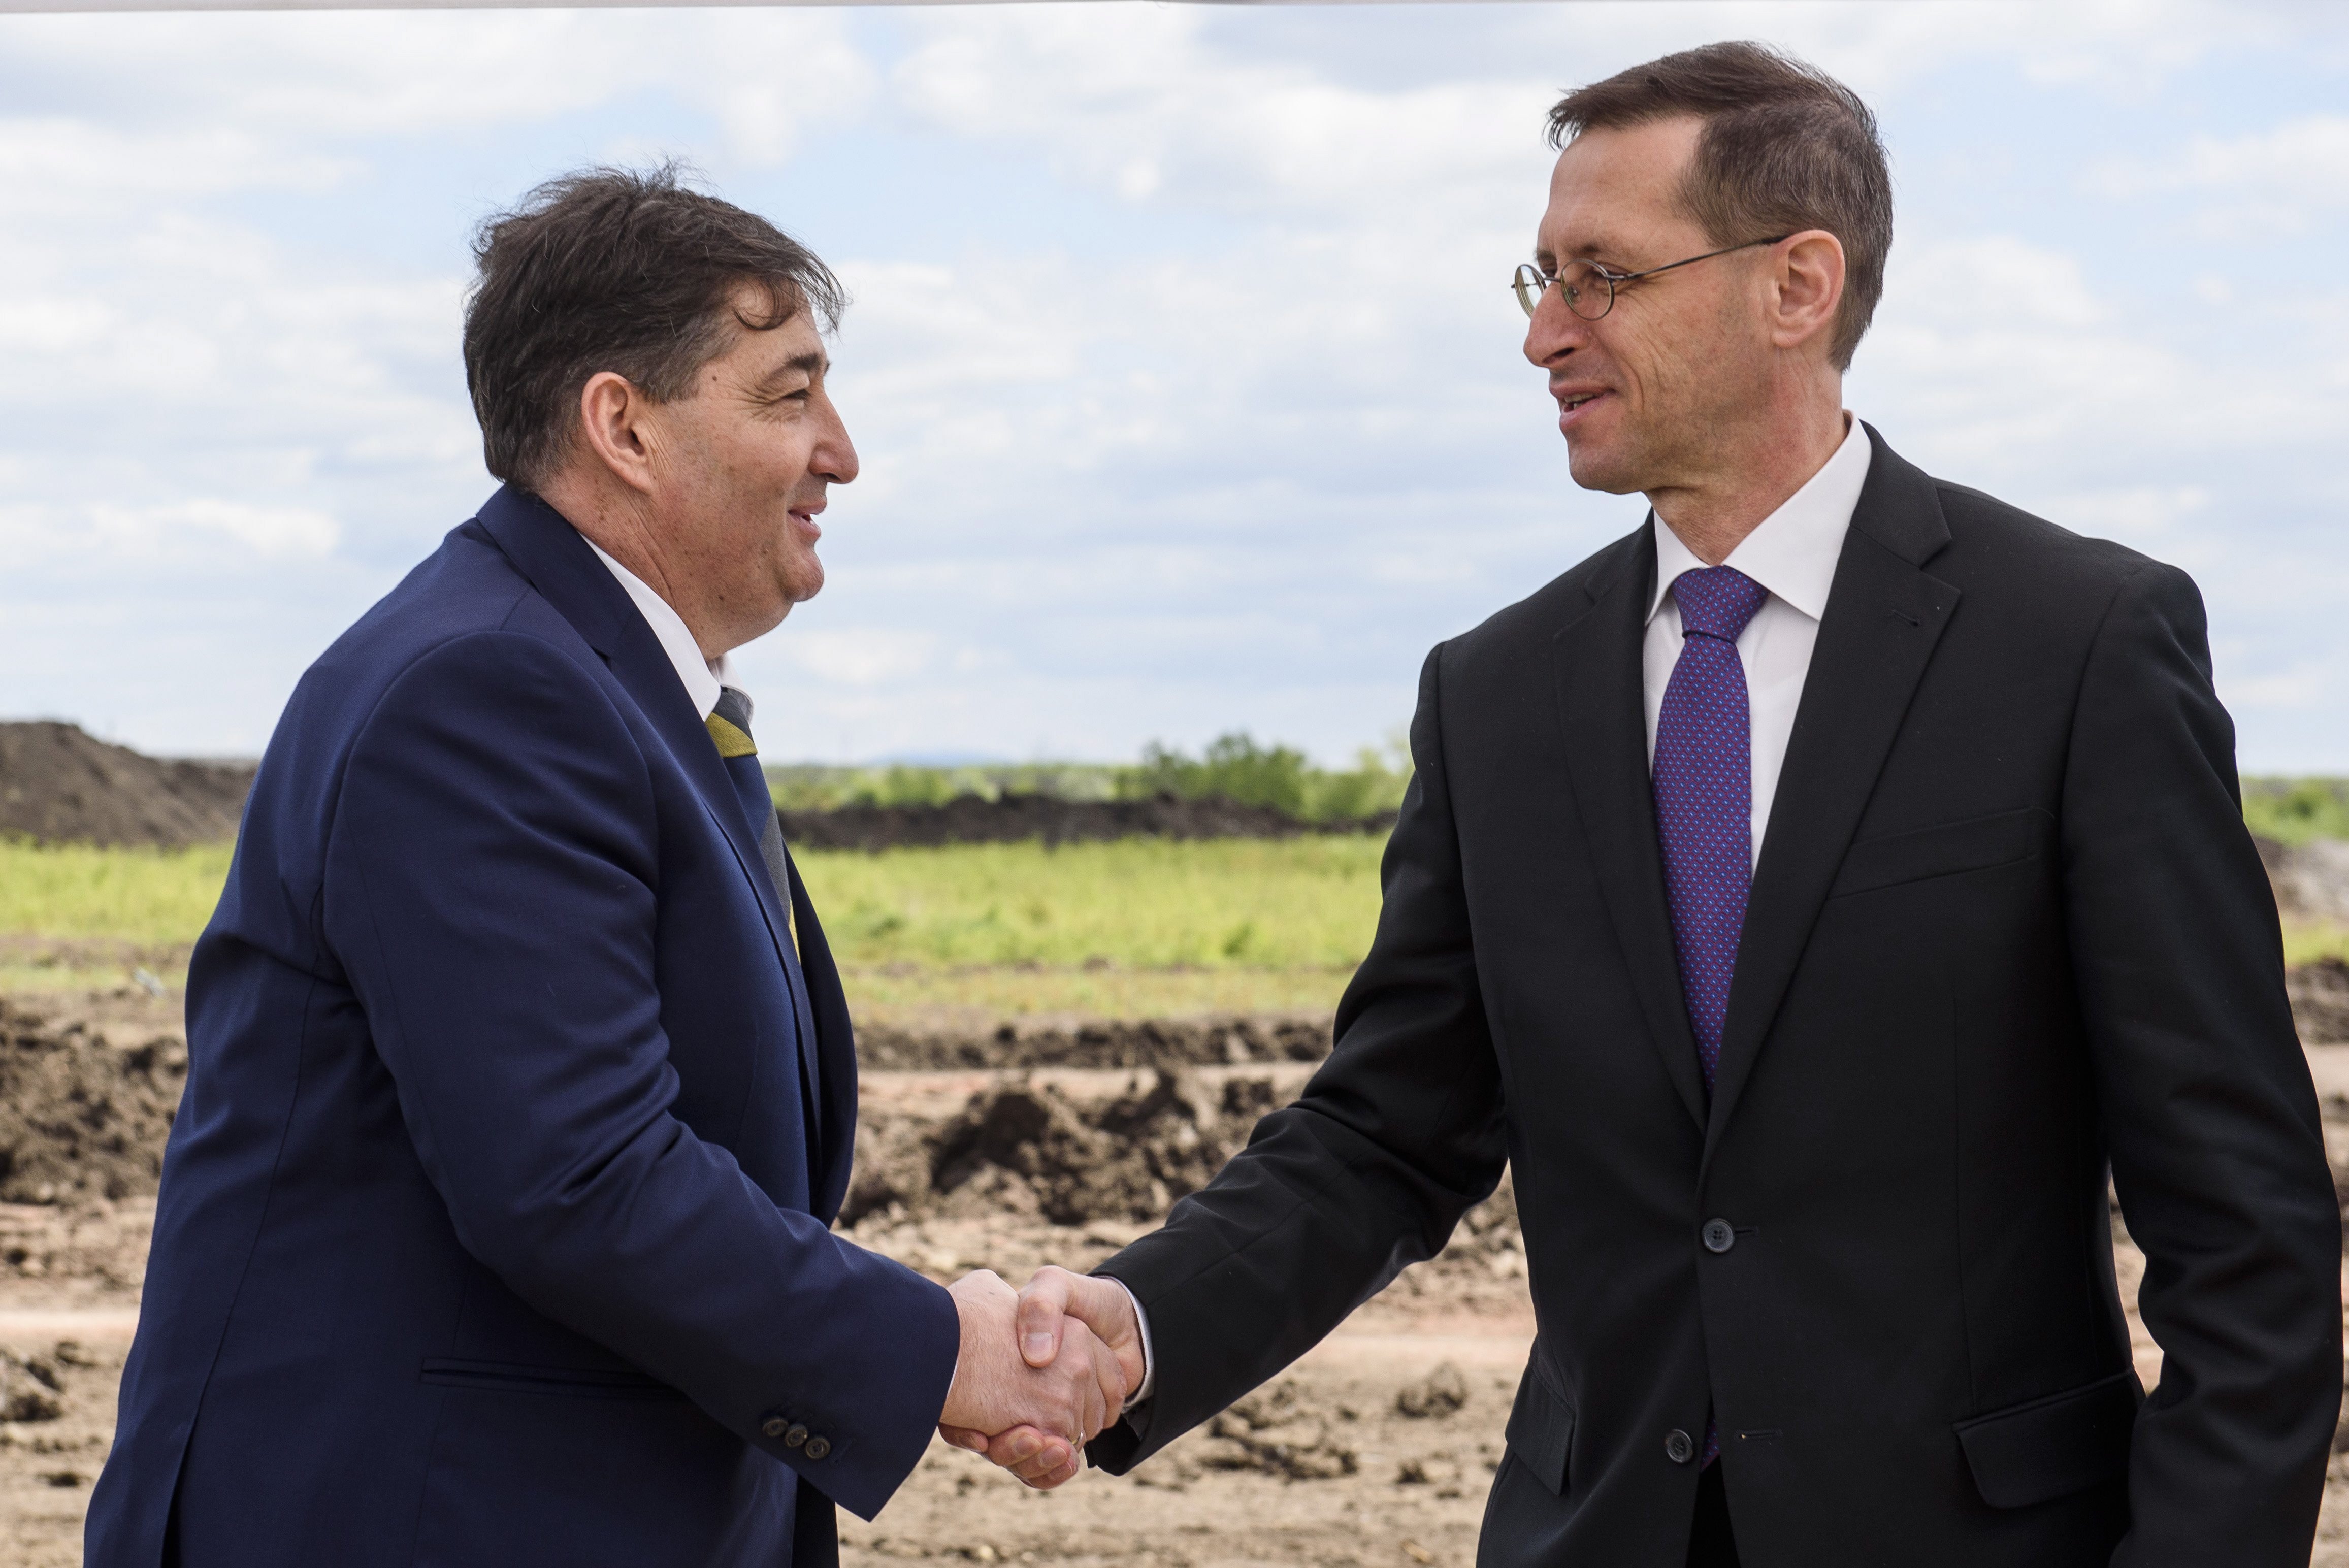 Mészáros Lőrinc, a Visonta Projekt Kft. tulajdonosa és Varga Mihály nemzetgazdasági miniszter a cég búzafeldolgozó üzemének alapkőletételén Visontán 2017. április 24-én